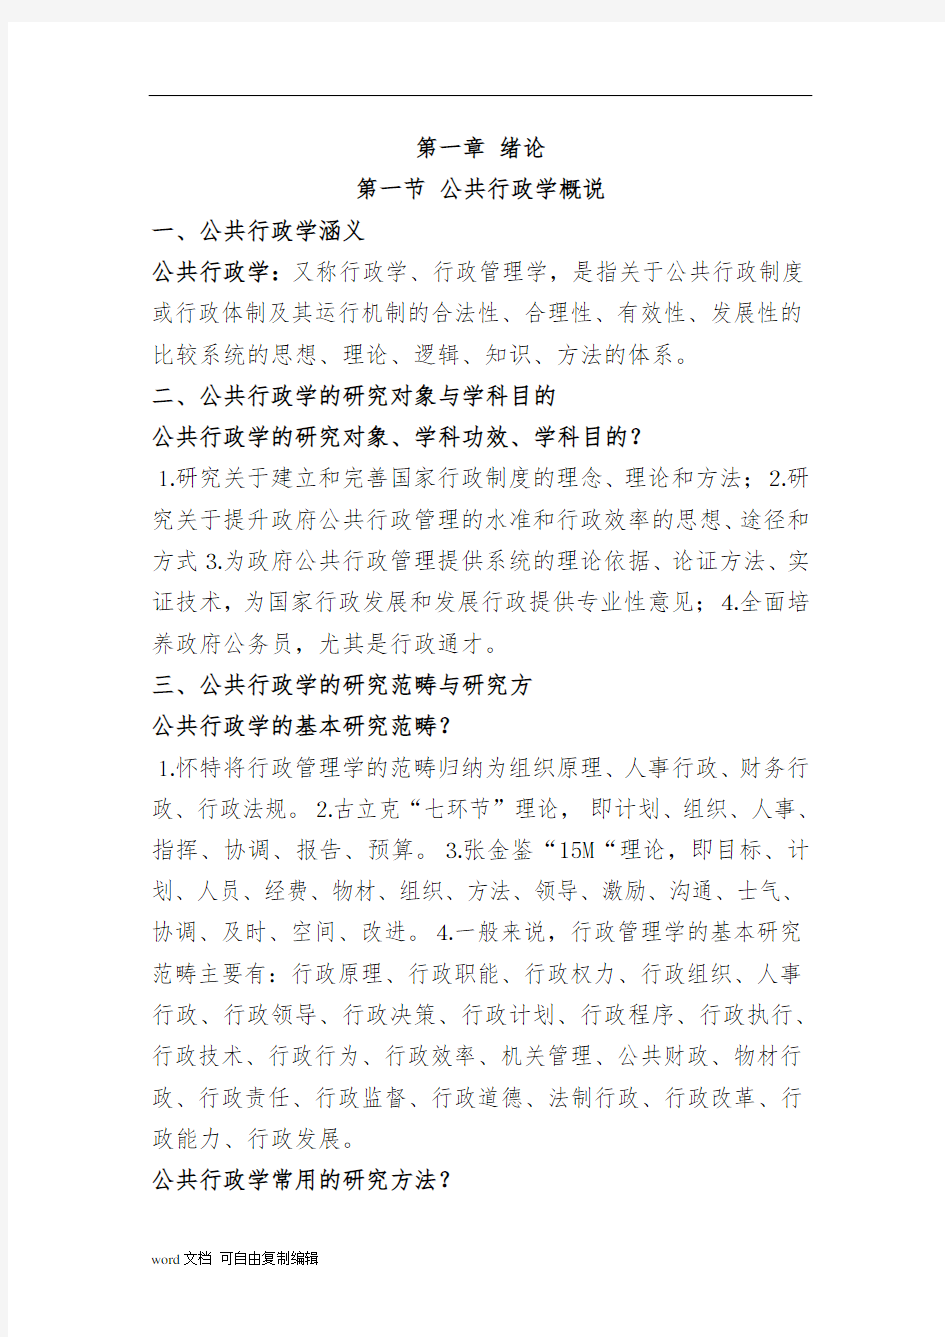 张国庆《公共行政学》(第三版)笔记